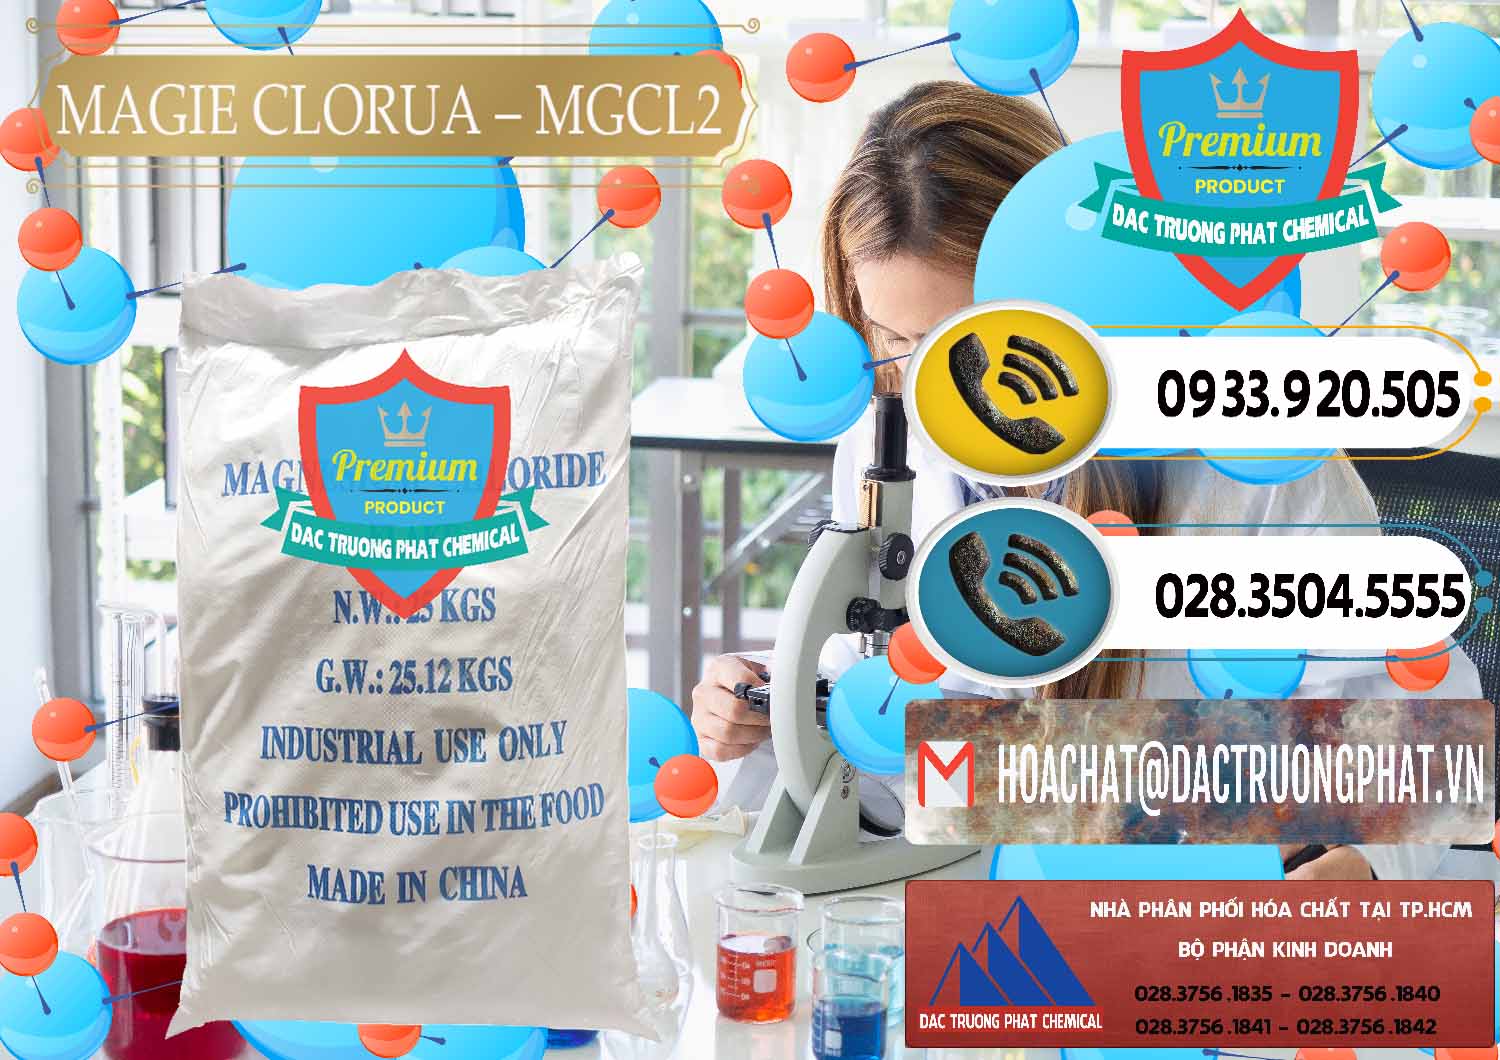 Công ty chuyên cung cấp & bán Magie Clorua – MGCL2 96% Dạng Vảy Trung Quốc China - 0091 - Nơi chuyên cung cấp - kinh doanh hóa chất tại TP.HCM - hoachatdetnhuom.vn